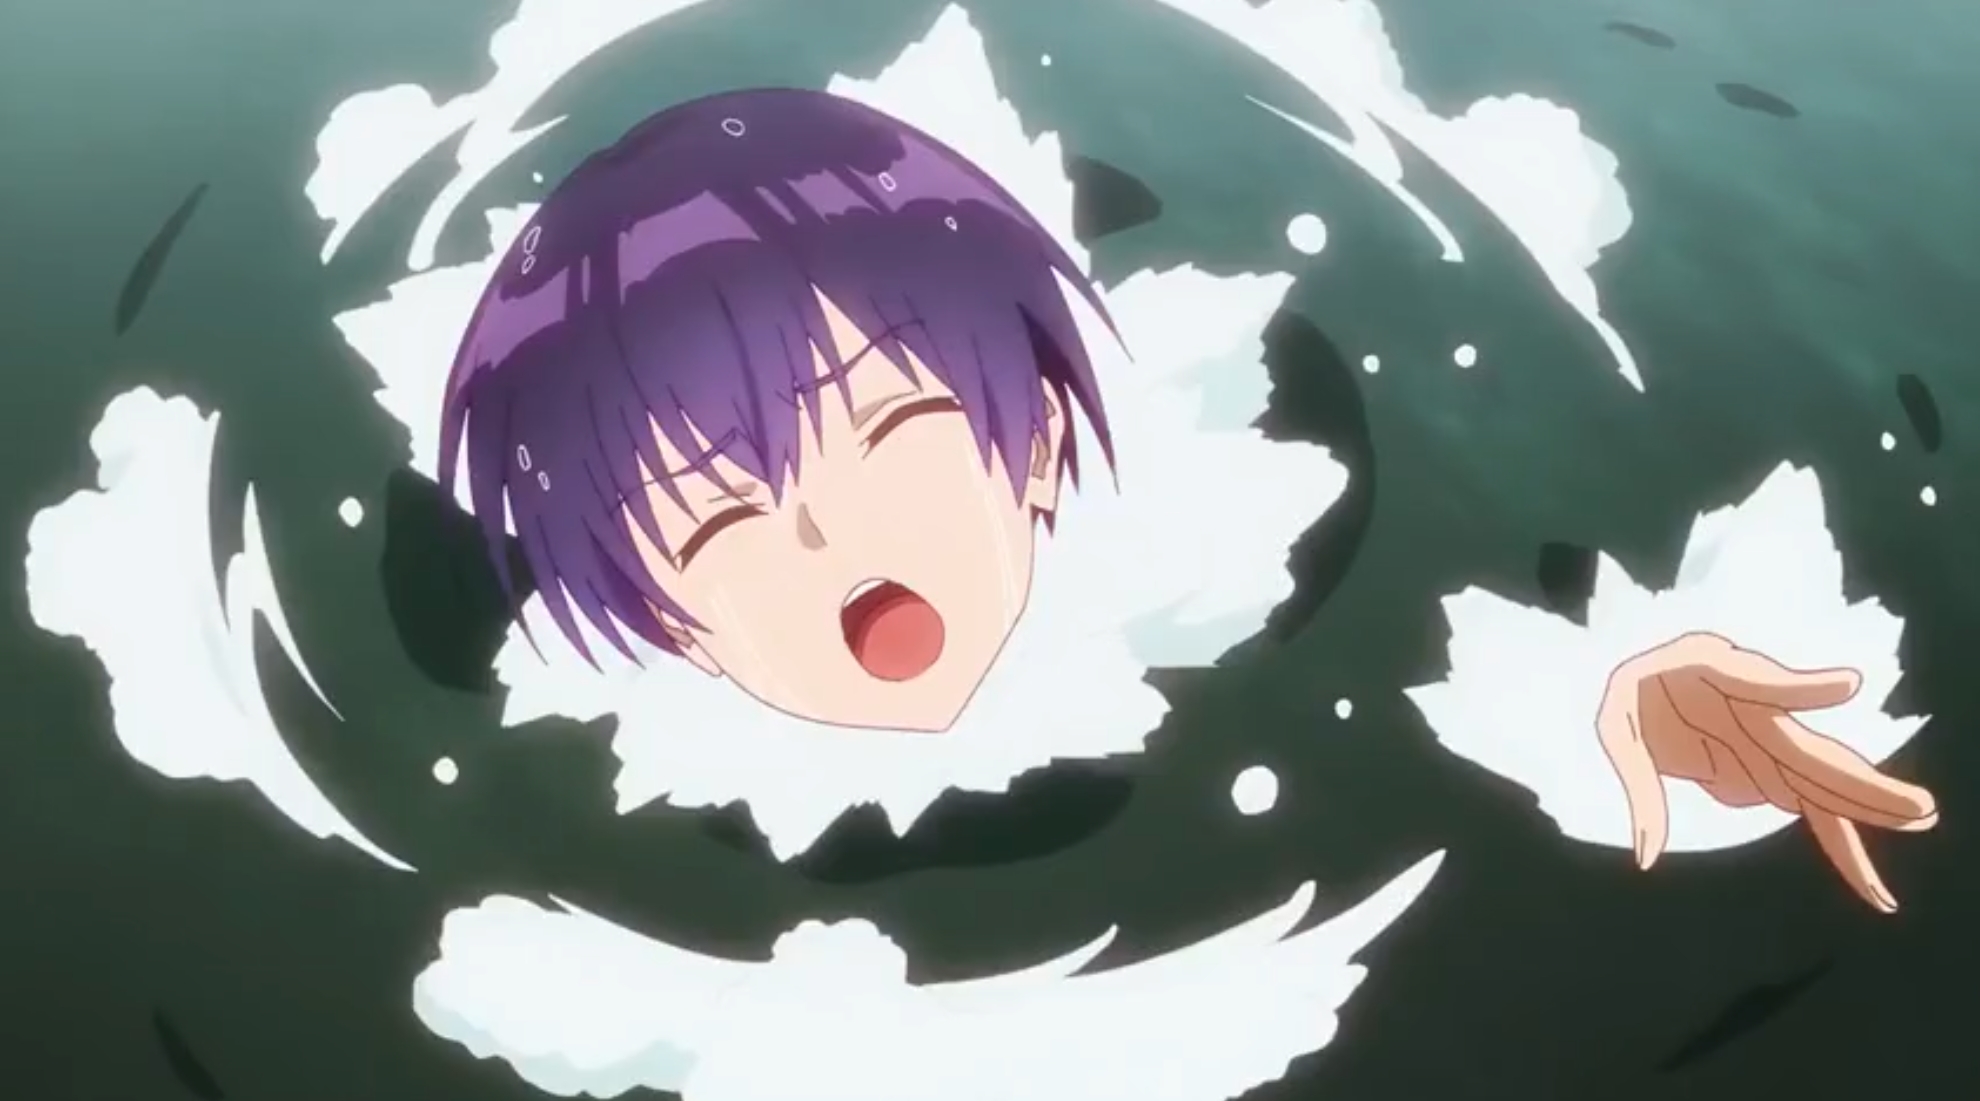 Shikimori save Izumi from drowning